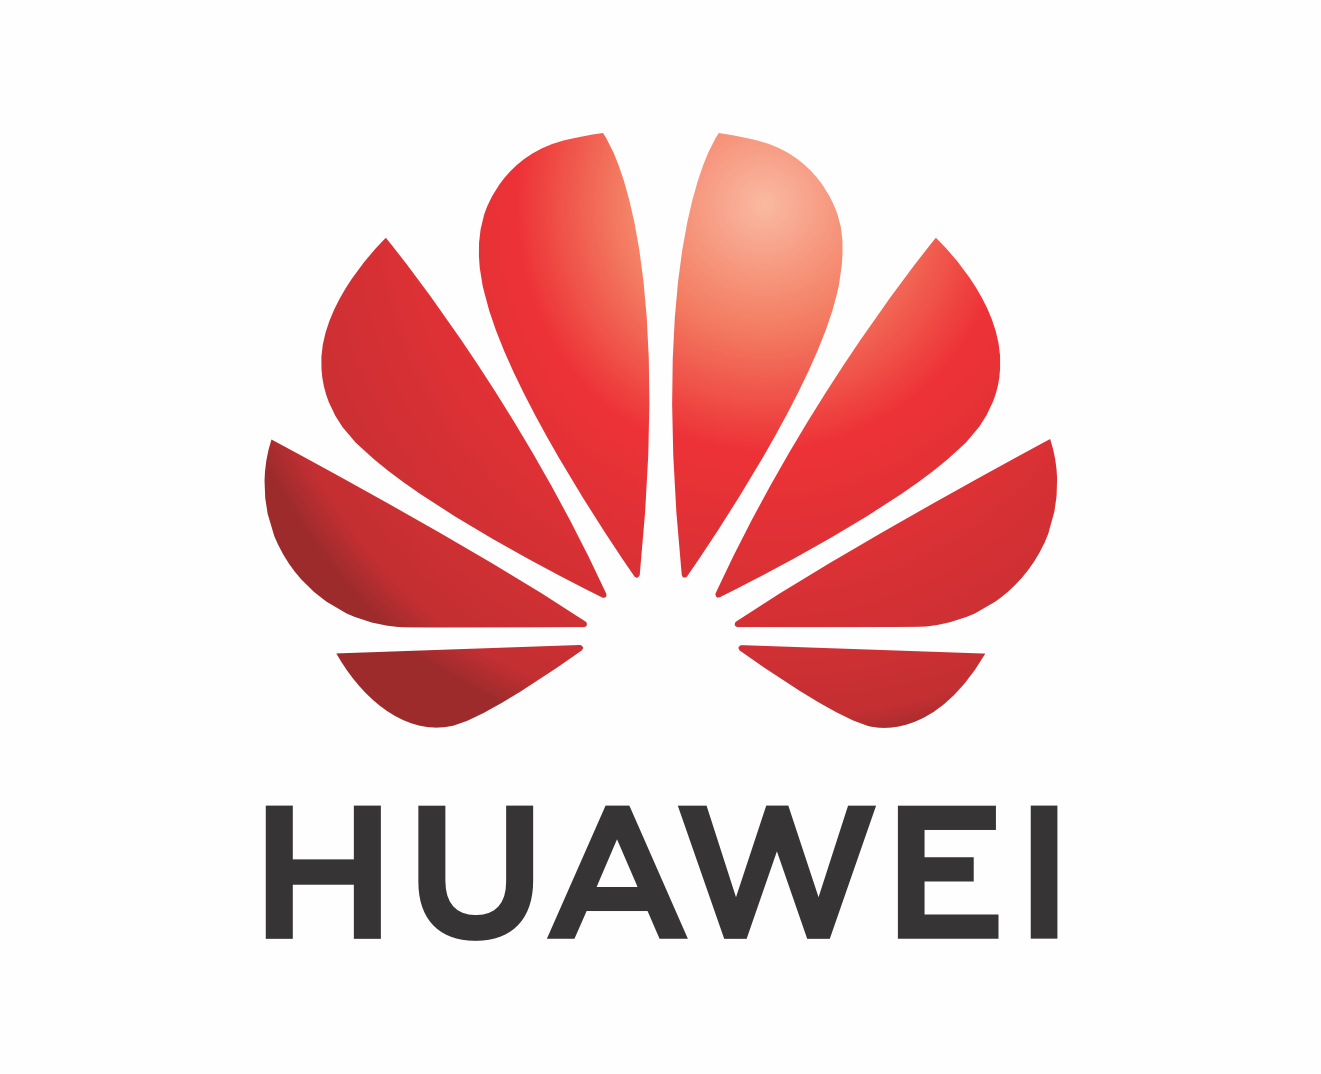 MEXDC Huawei